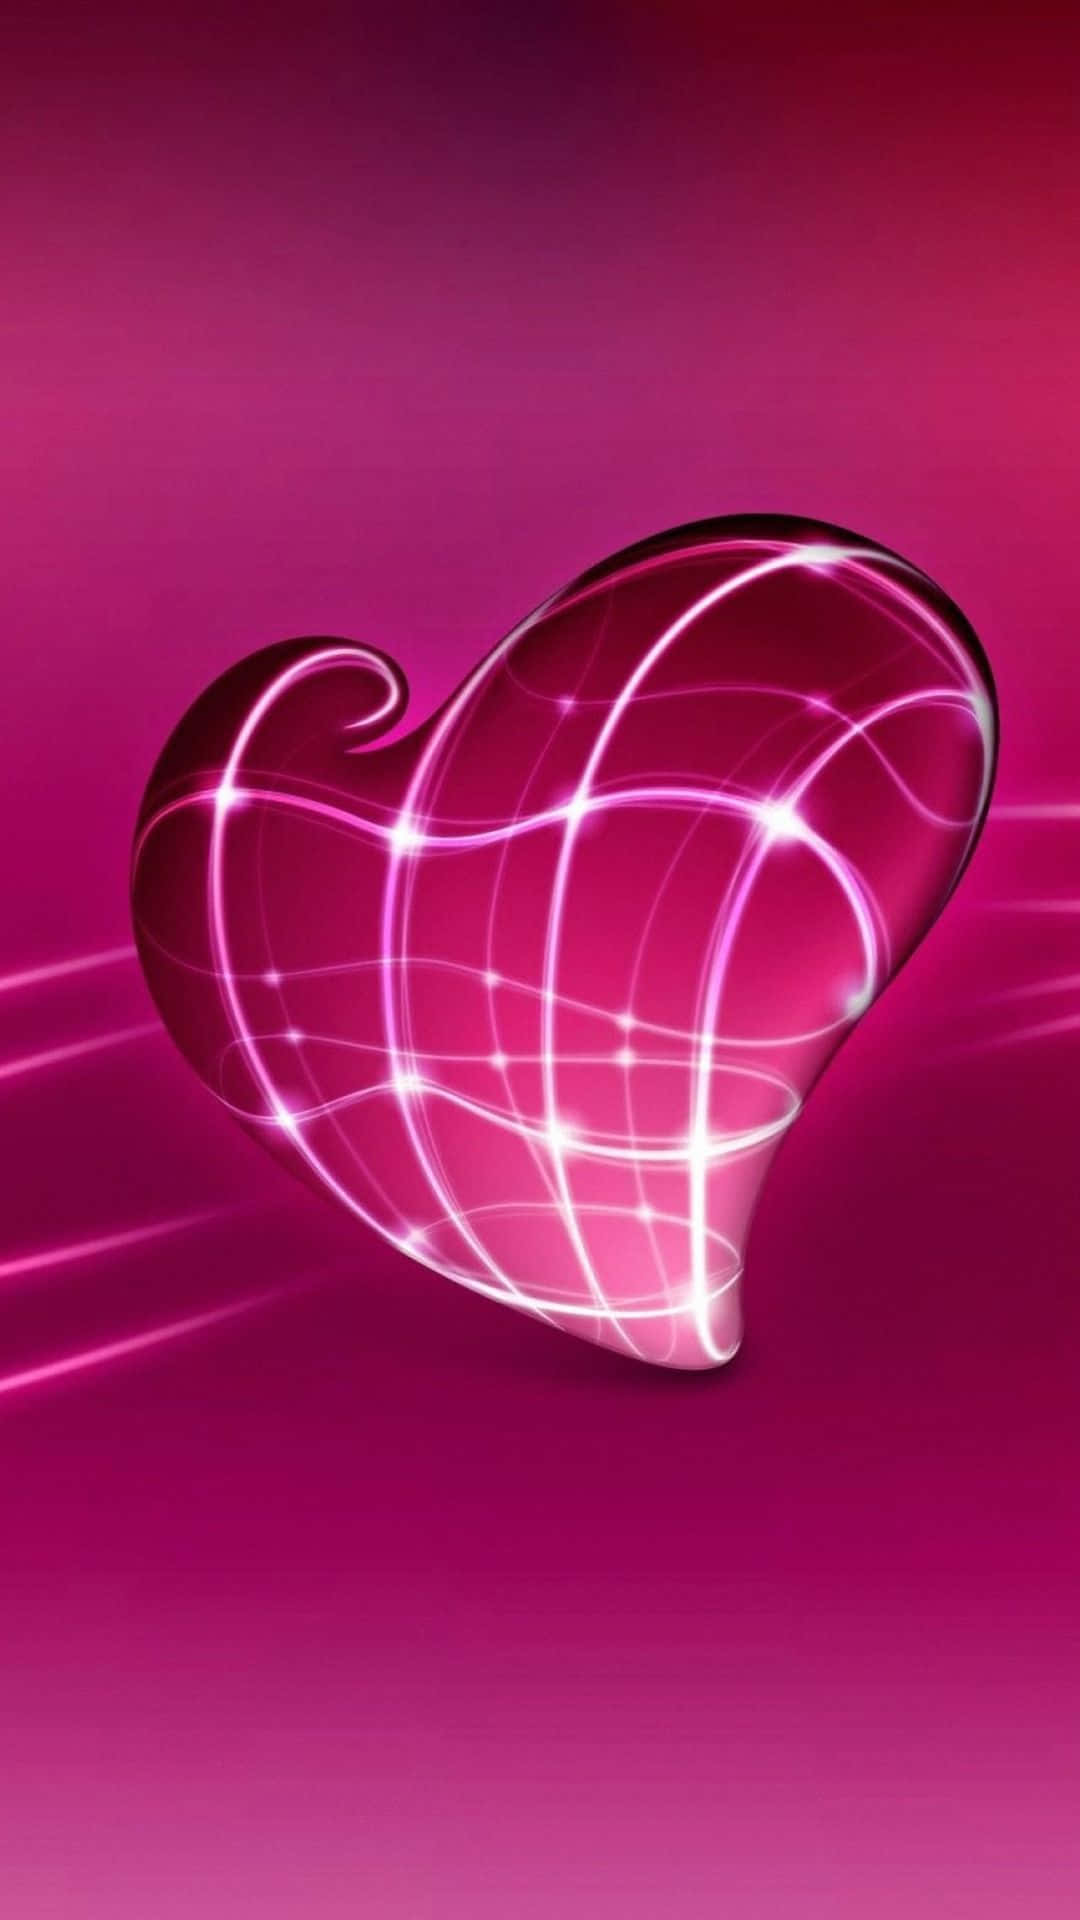  Herzen 3D Hintergrundbild 1080x1920. Downloaden Berauschendesleuchtendes Pinkes Herz iPhone Hintergrundbild Wallpaper